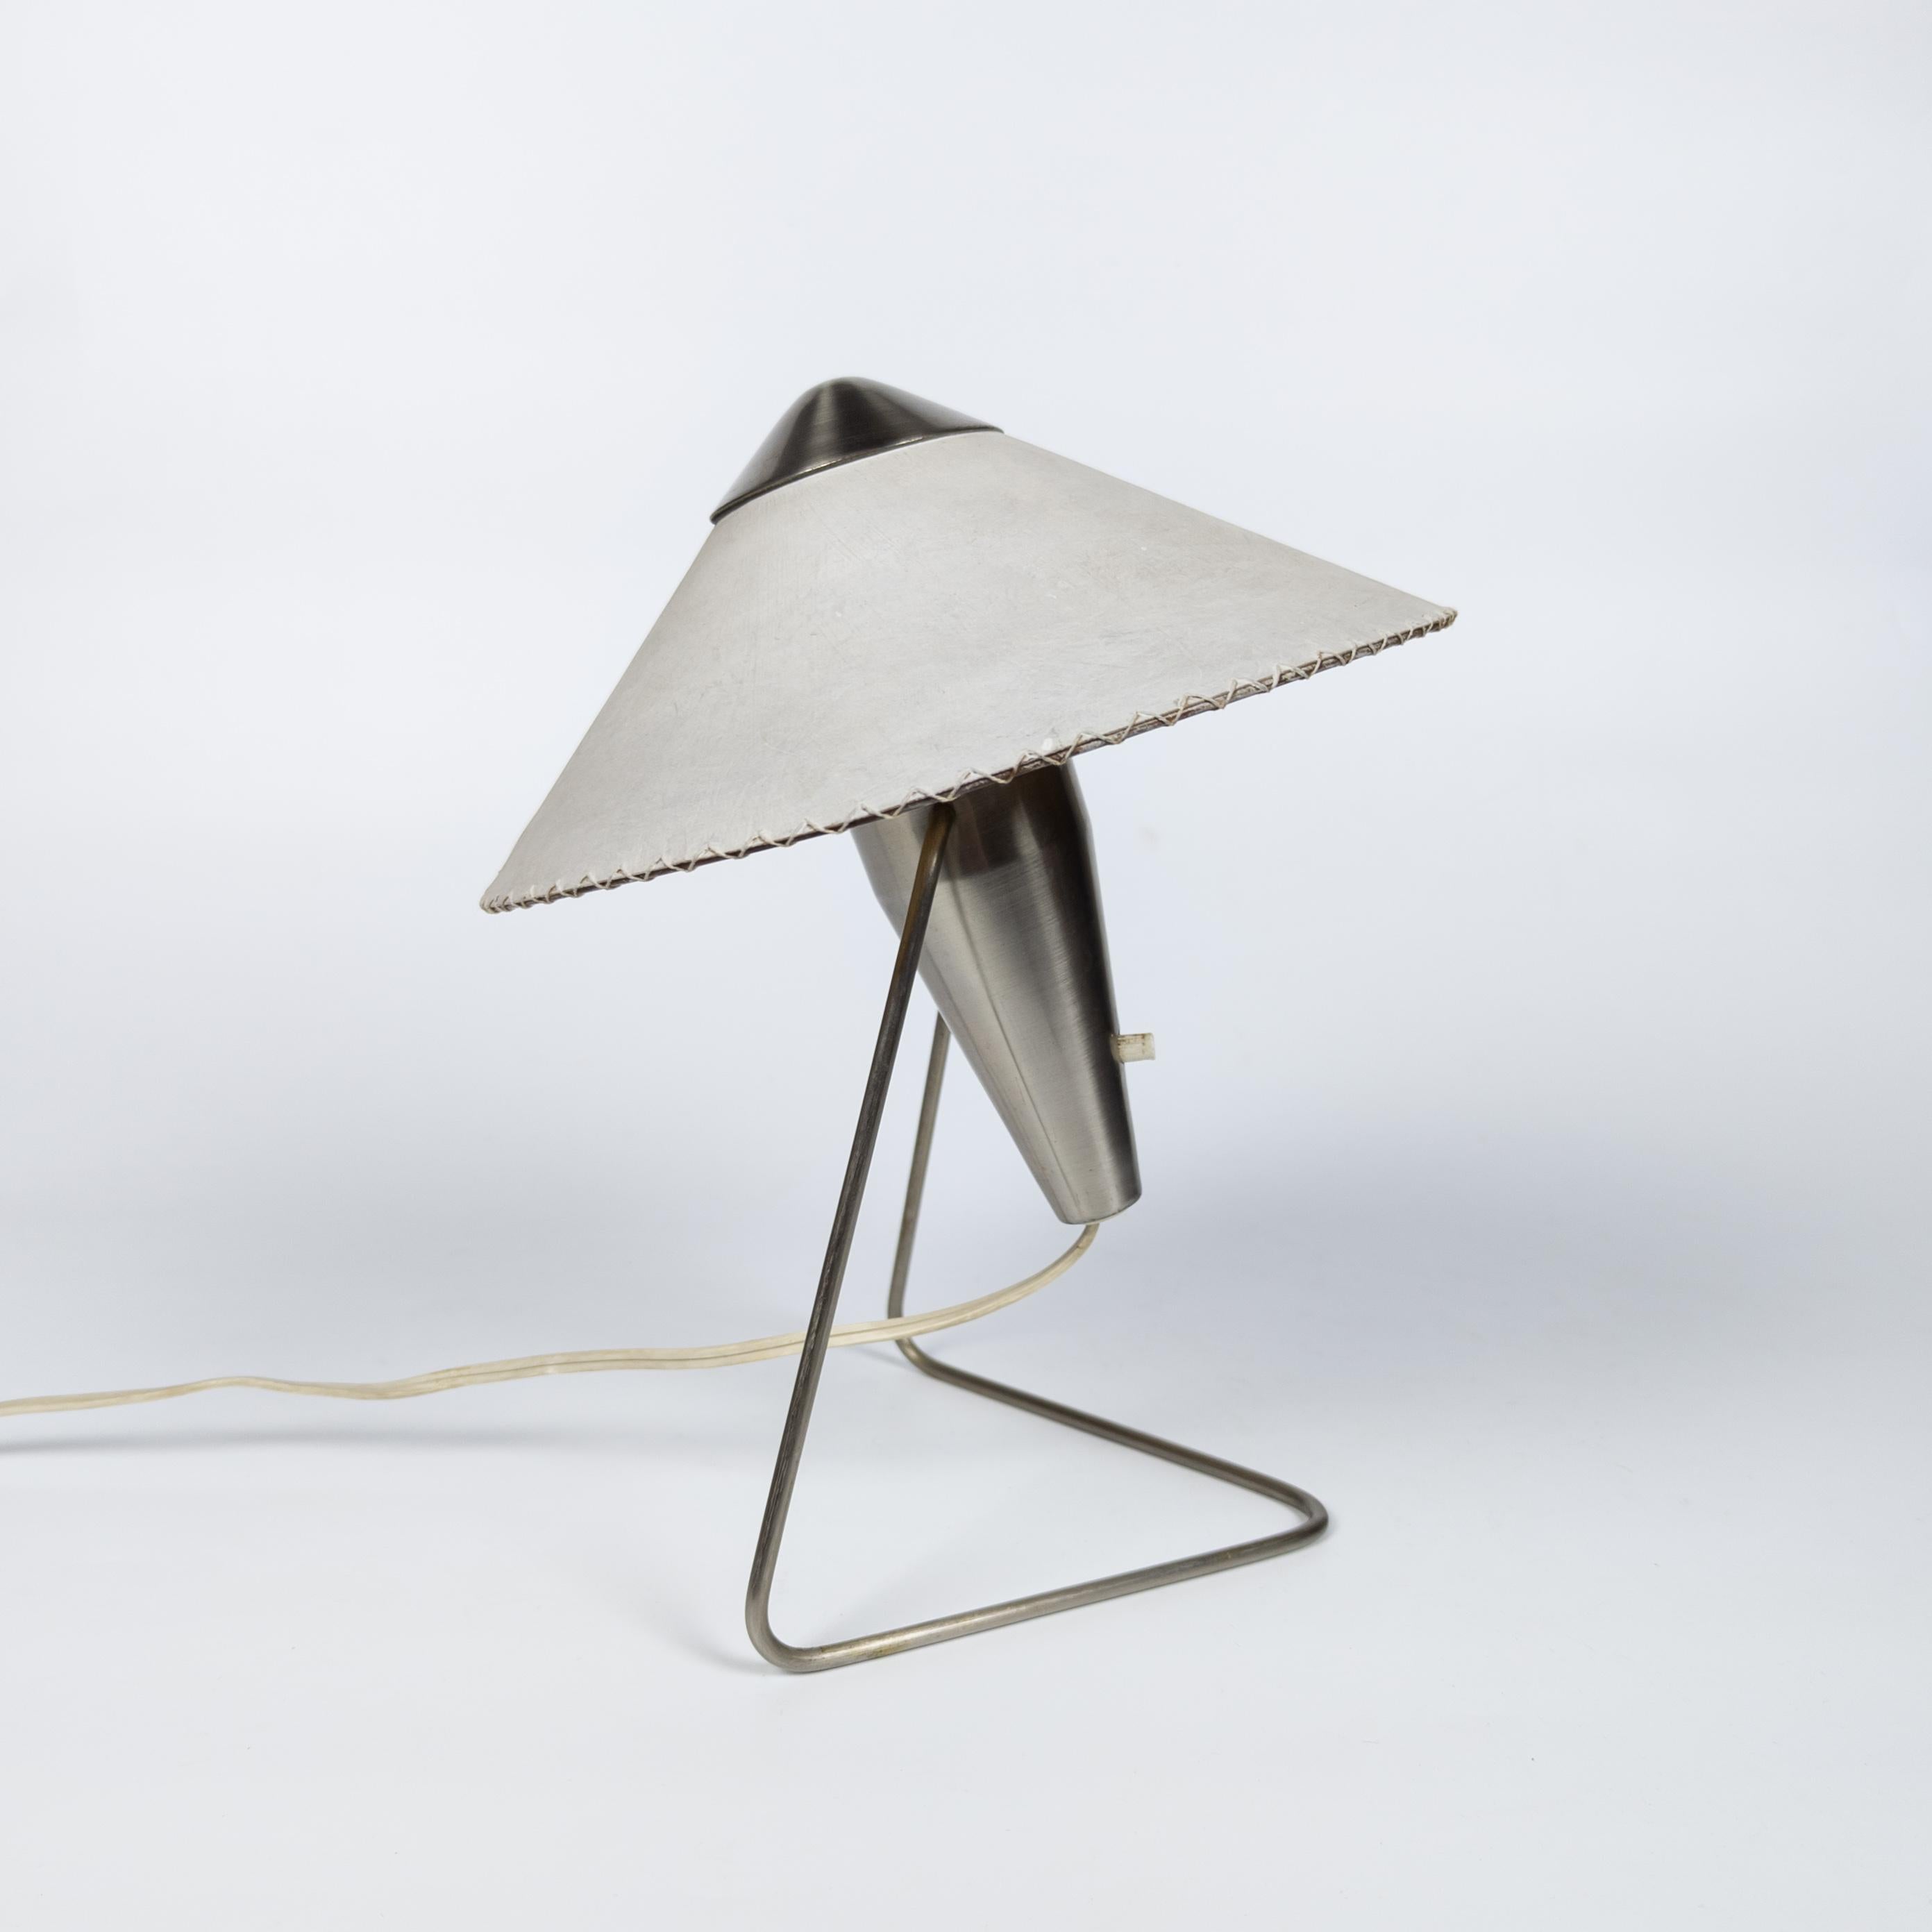 Kleine Tisch- oder Wandleuchte, entworfen von der tschechischen Designerin Helena Frantová im Jahr 1953. Die Leuchte hat ein schlichtes, modernistisches und doch anspruchsvolles Design. Das Gehäuse der Leuchte ist aus vernickeltem Stahl gefertigt.